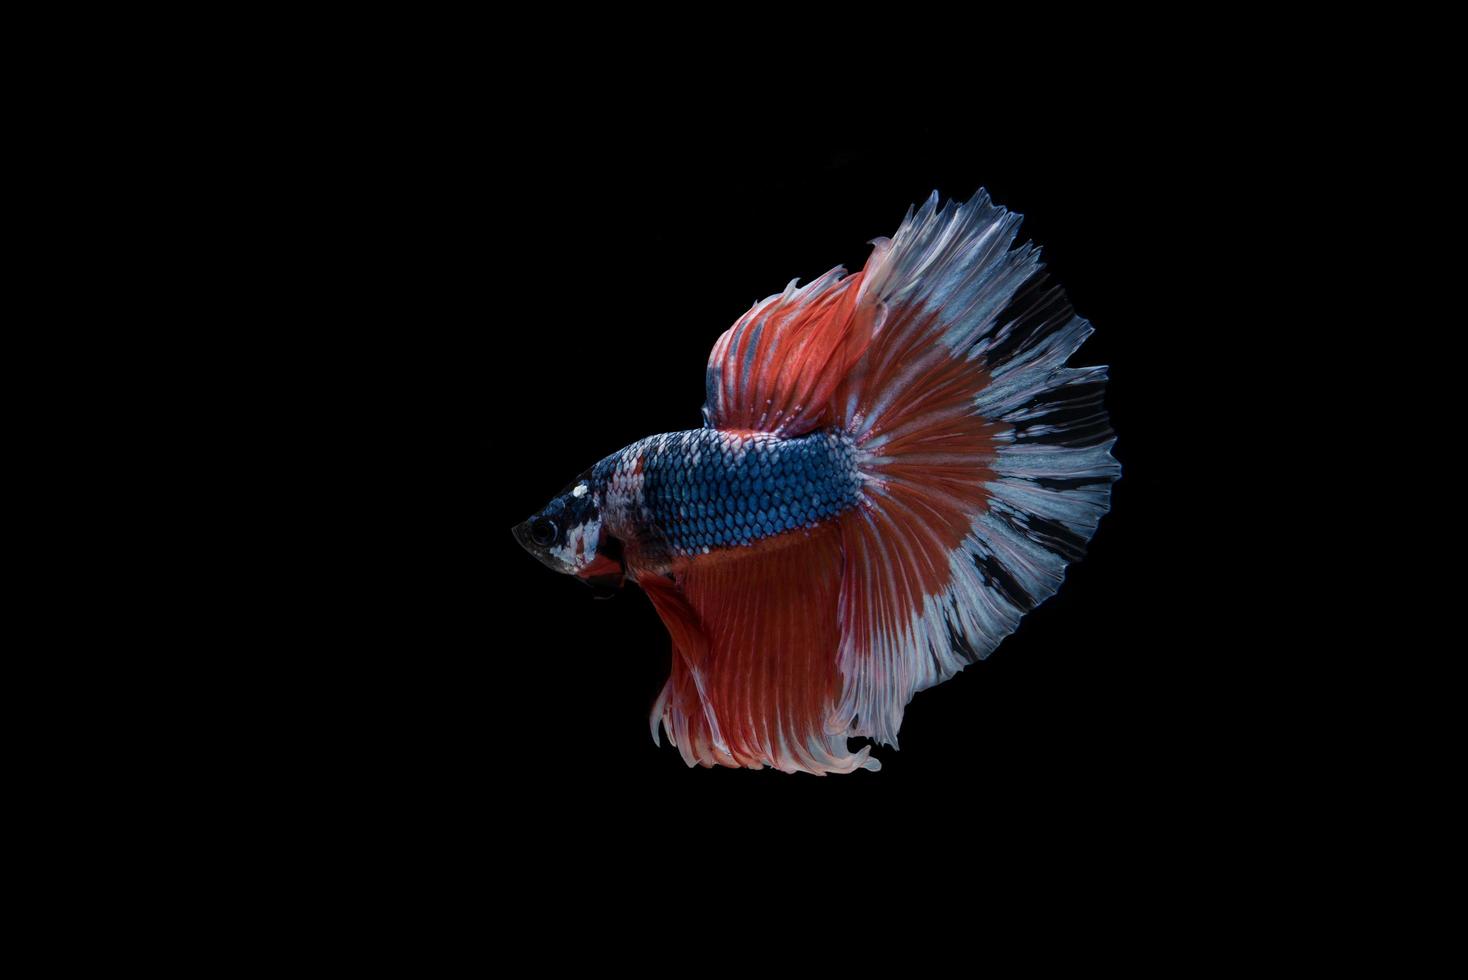 Hermoso colorido pez betta siamés foto